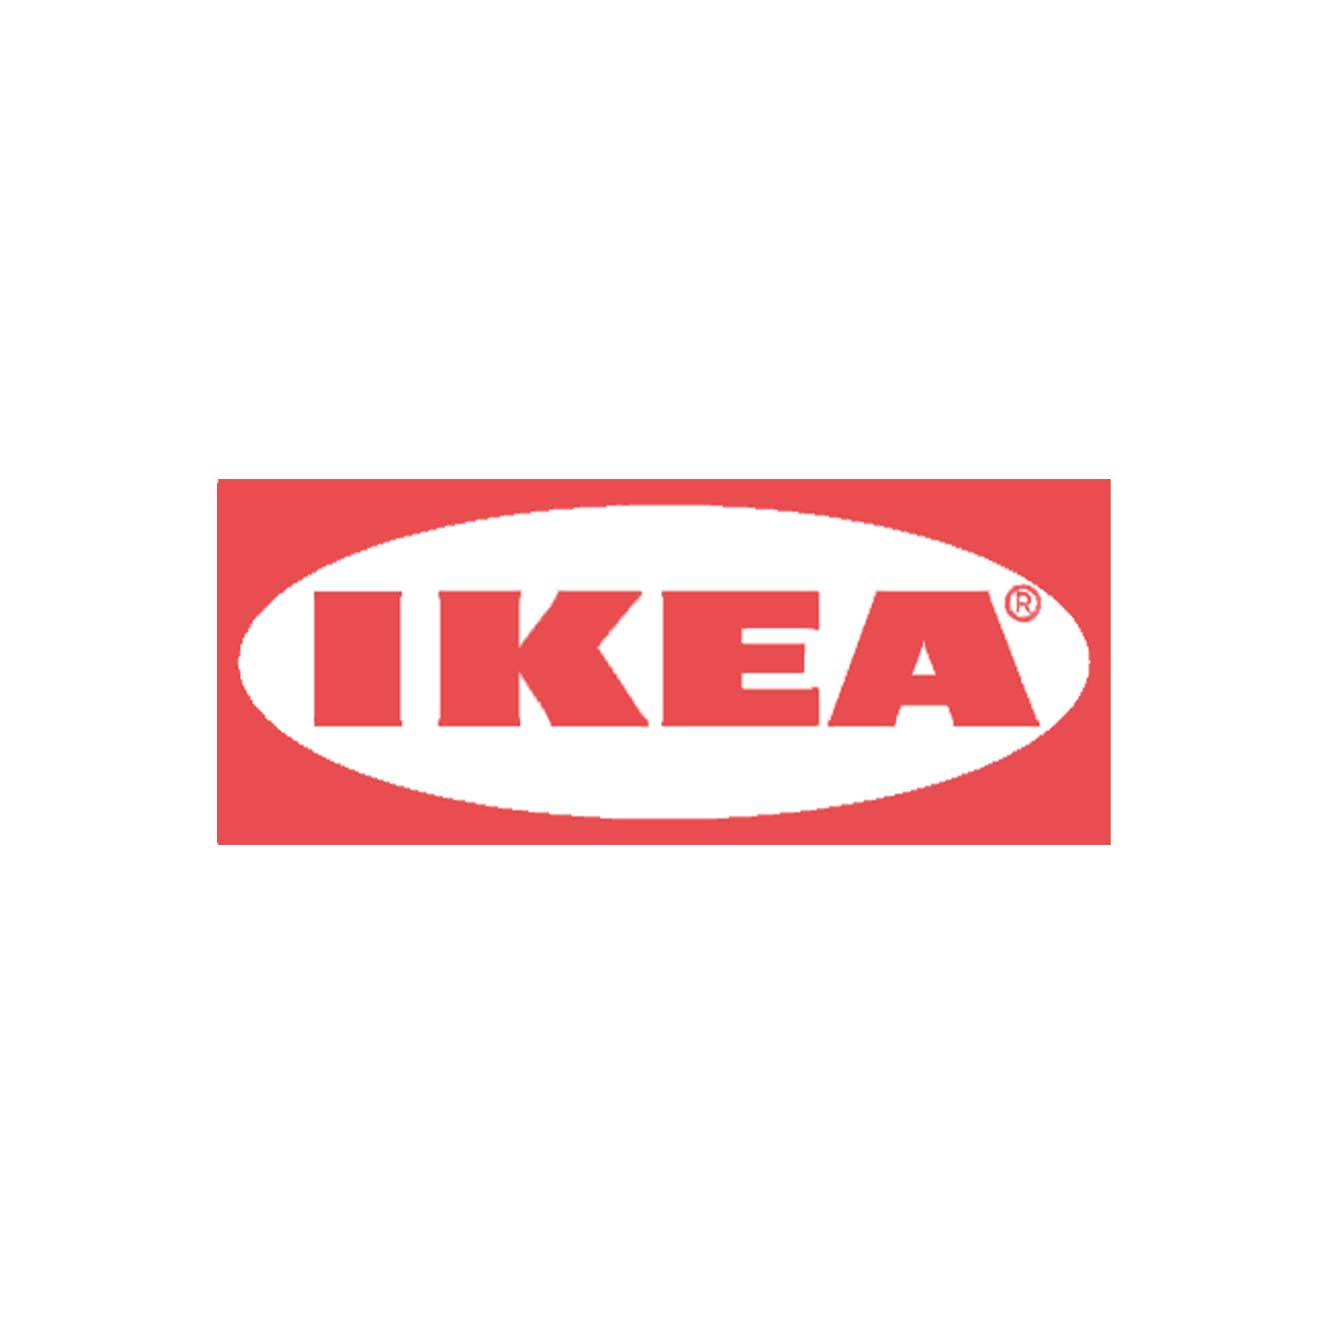 IKEA client de Marketing Création